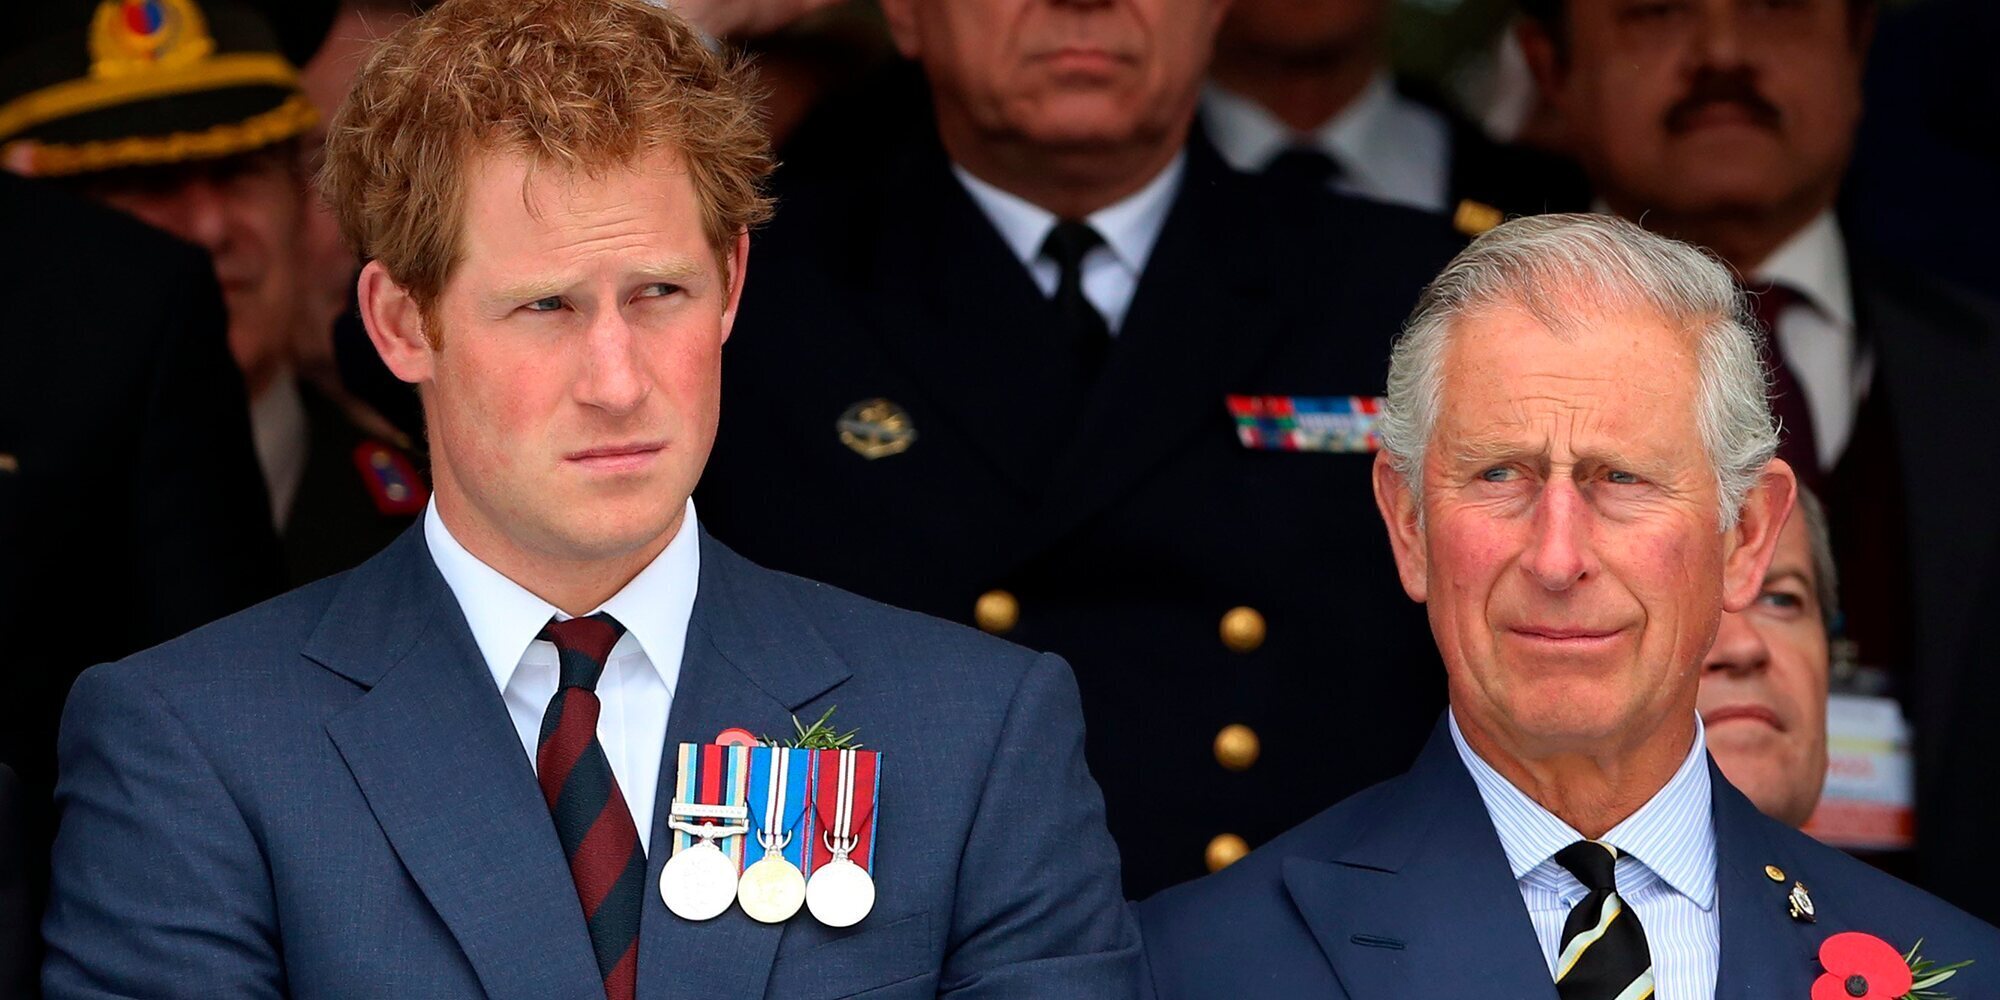 El Príncipe Carlos de Inglaterra intenta mejorar su relación con su hijo el Príncipe Harry elogiando su trabajo